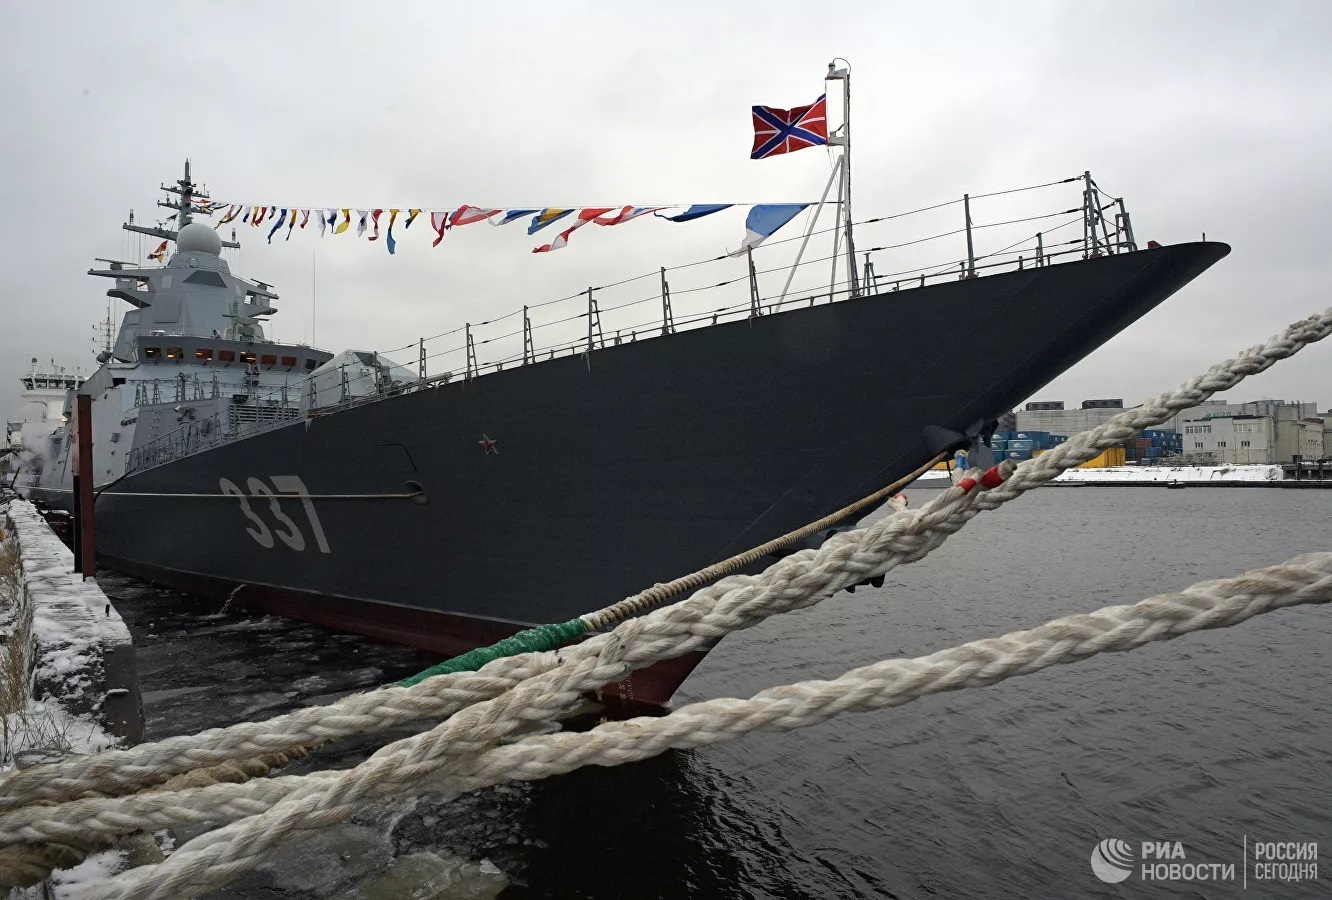 Top 5 tàu ‘khủng’ nhất của Hải quân Nga